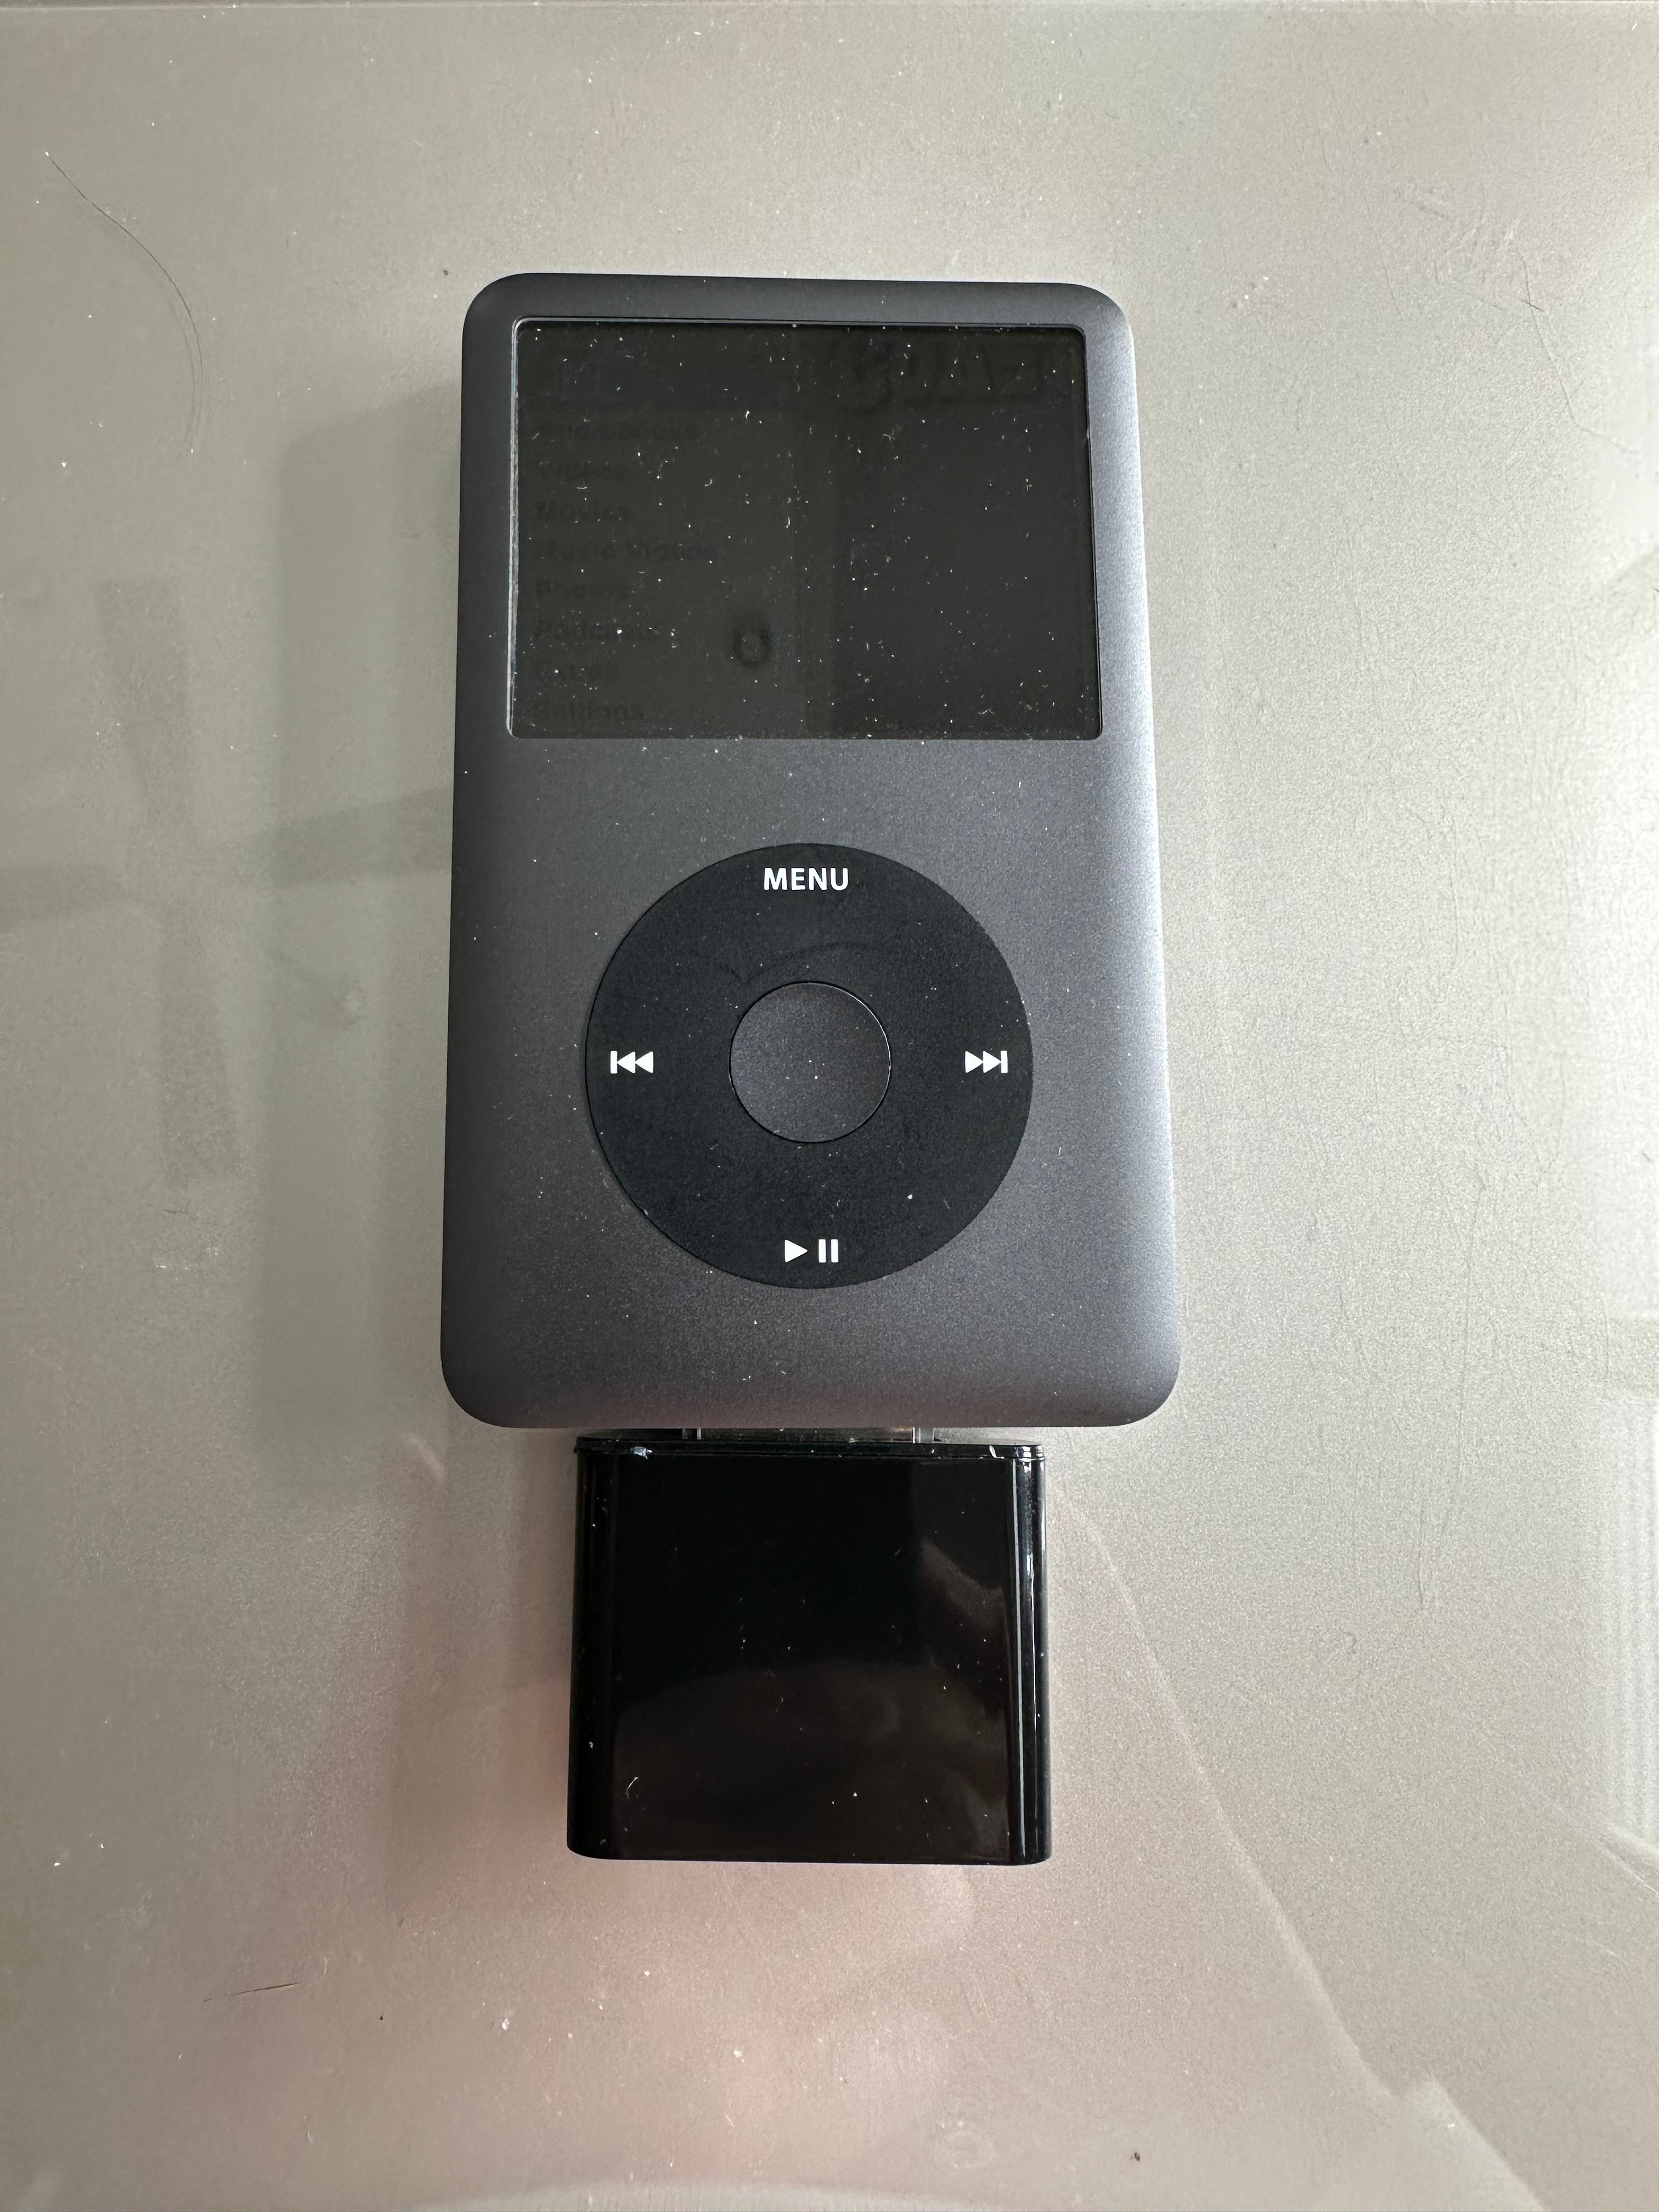 Apple iPod classic - 160GB Black - 160GB Black